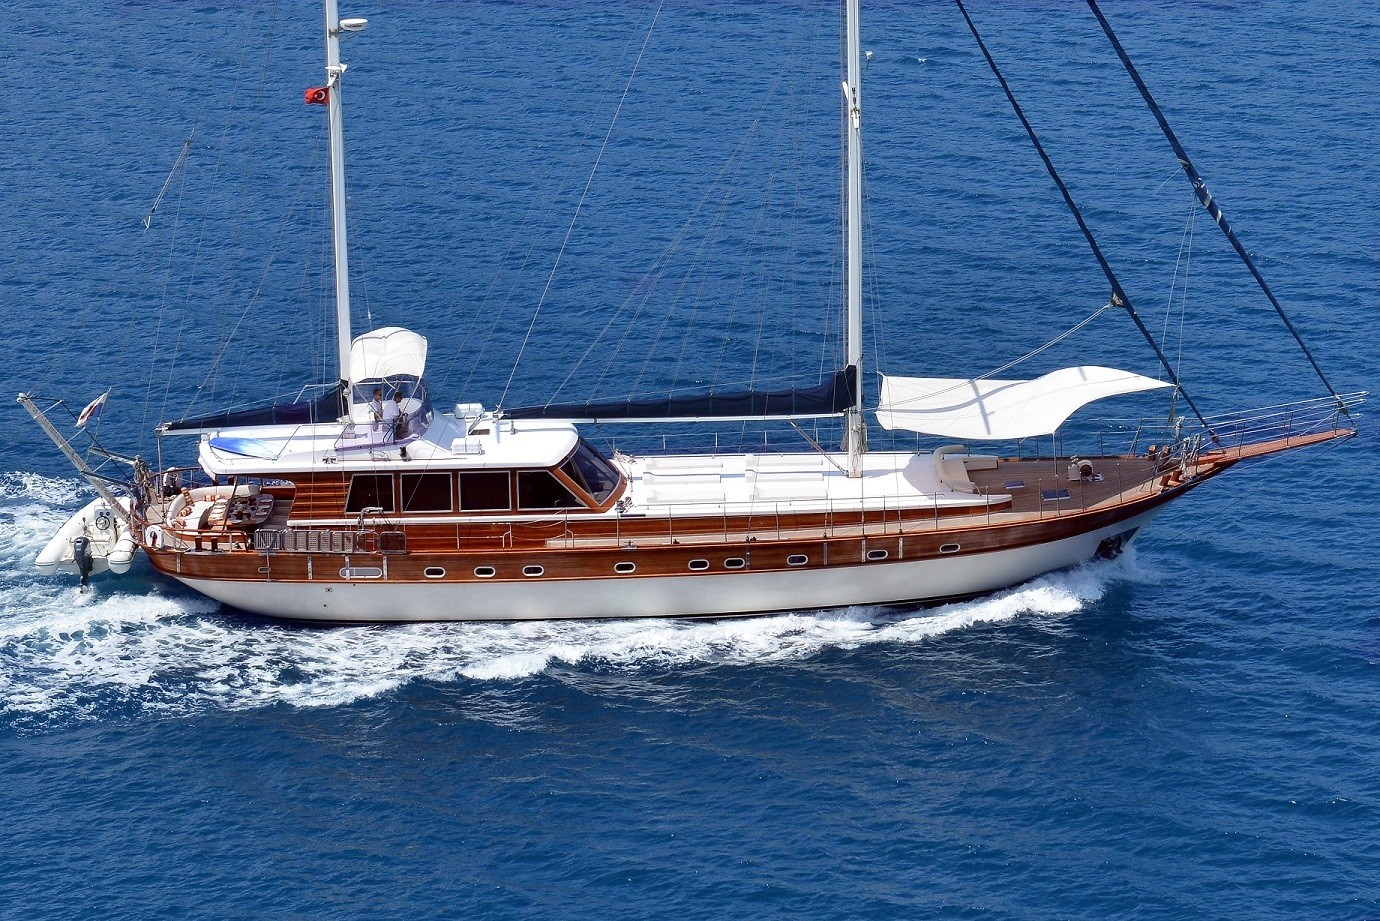 The 27m Yacht EUPHORIA